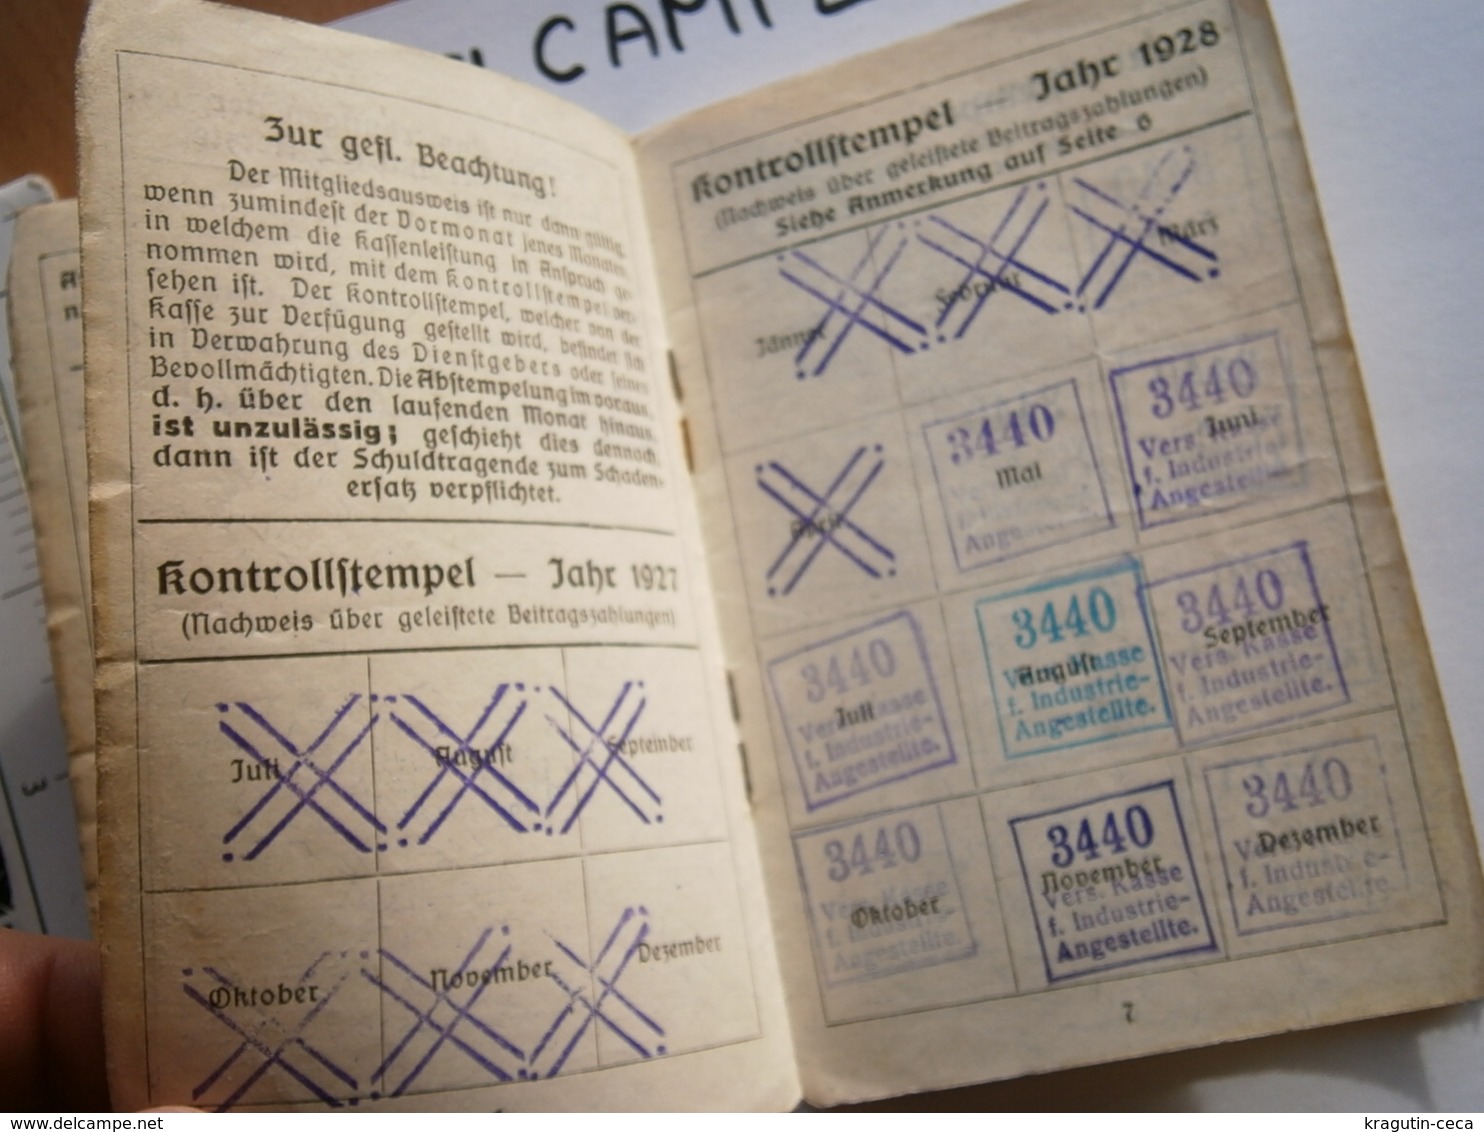 1930 WIEN OSTERREICH VIENNA AUSTRIA Mitgliedsausweis MEMBER CARD AUSWEIS EMPLOYEES DOCUMENT INSURANCE VERSICHERUNGSKARTE - Mitgliedskarten